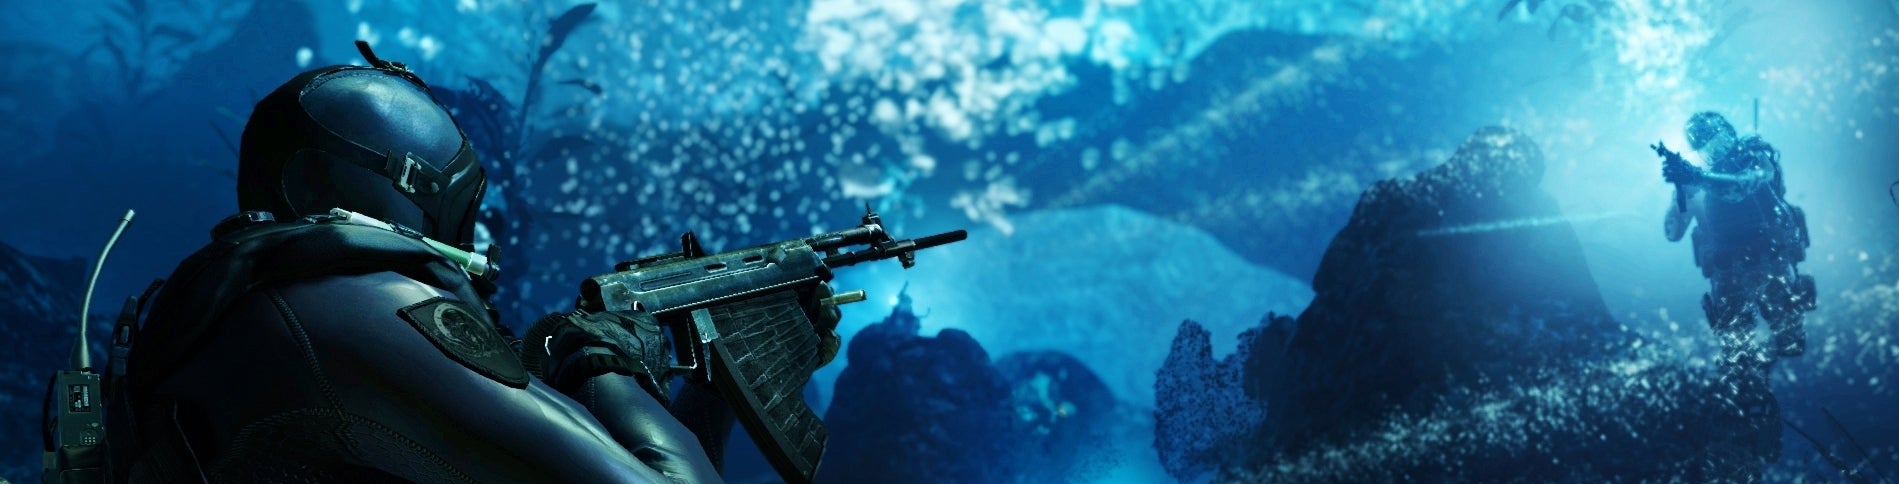 Image for Videosrovnání Call of Duty: Ghosts na PS3/X360 s PS4 verzí